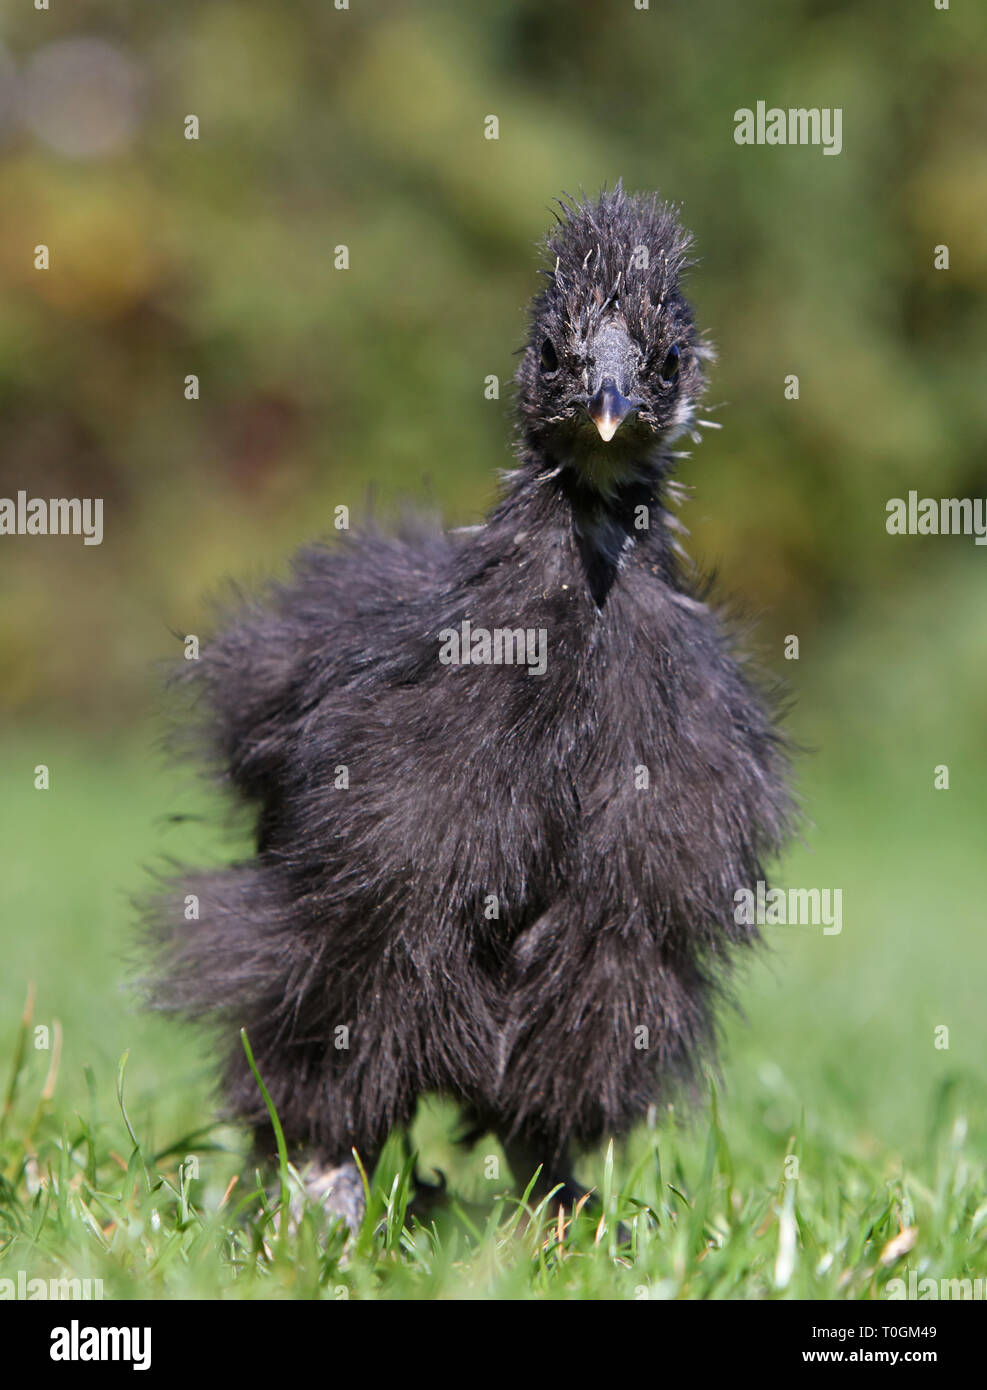 Pollo negro de seda caminando en medio de un frondoso jardín en verano Foto de stock